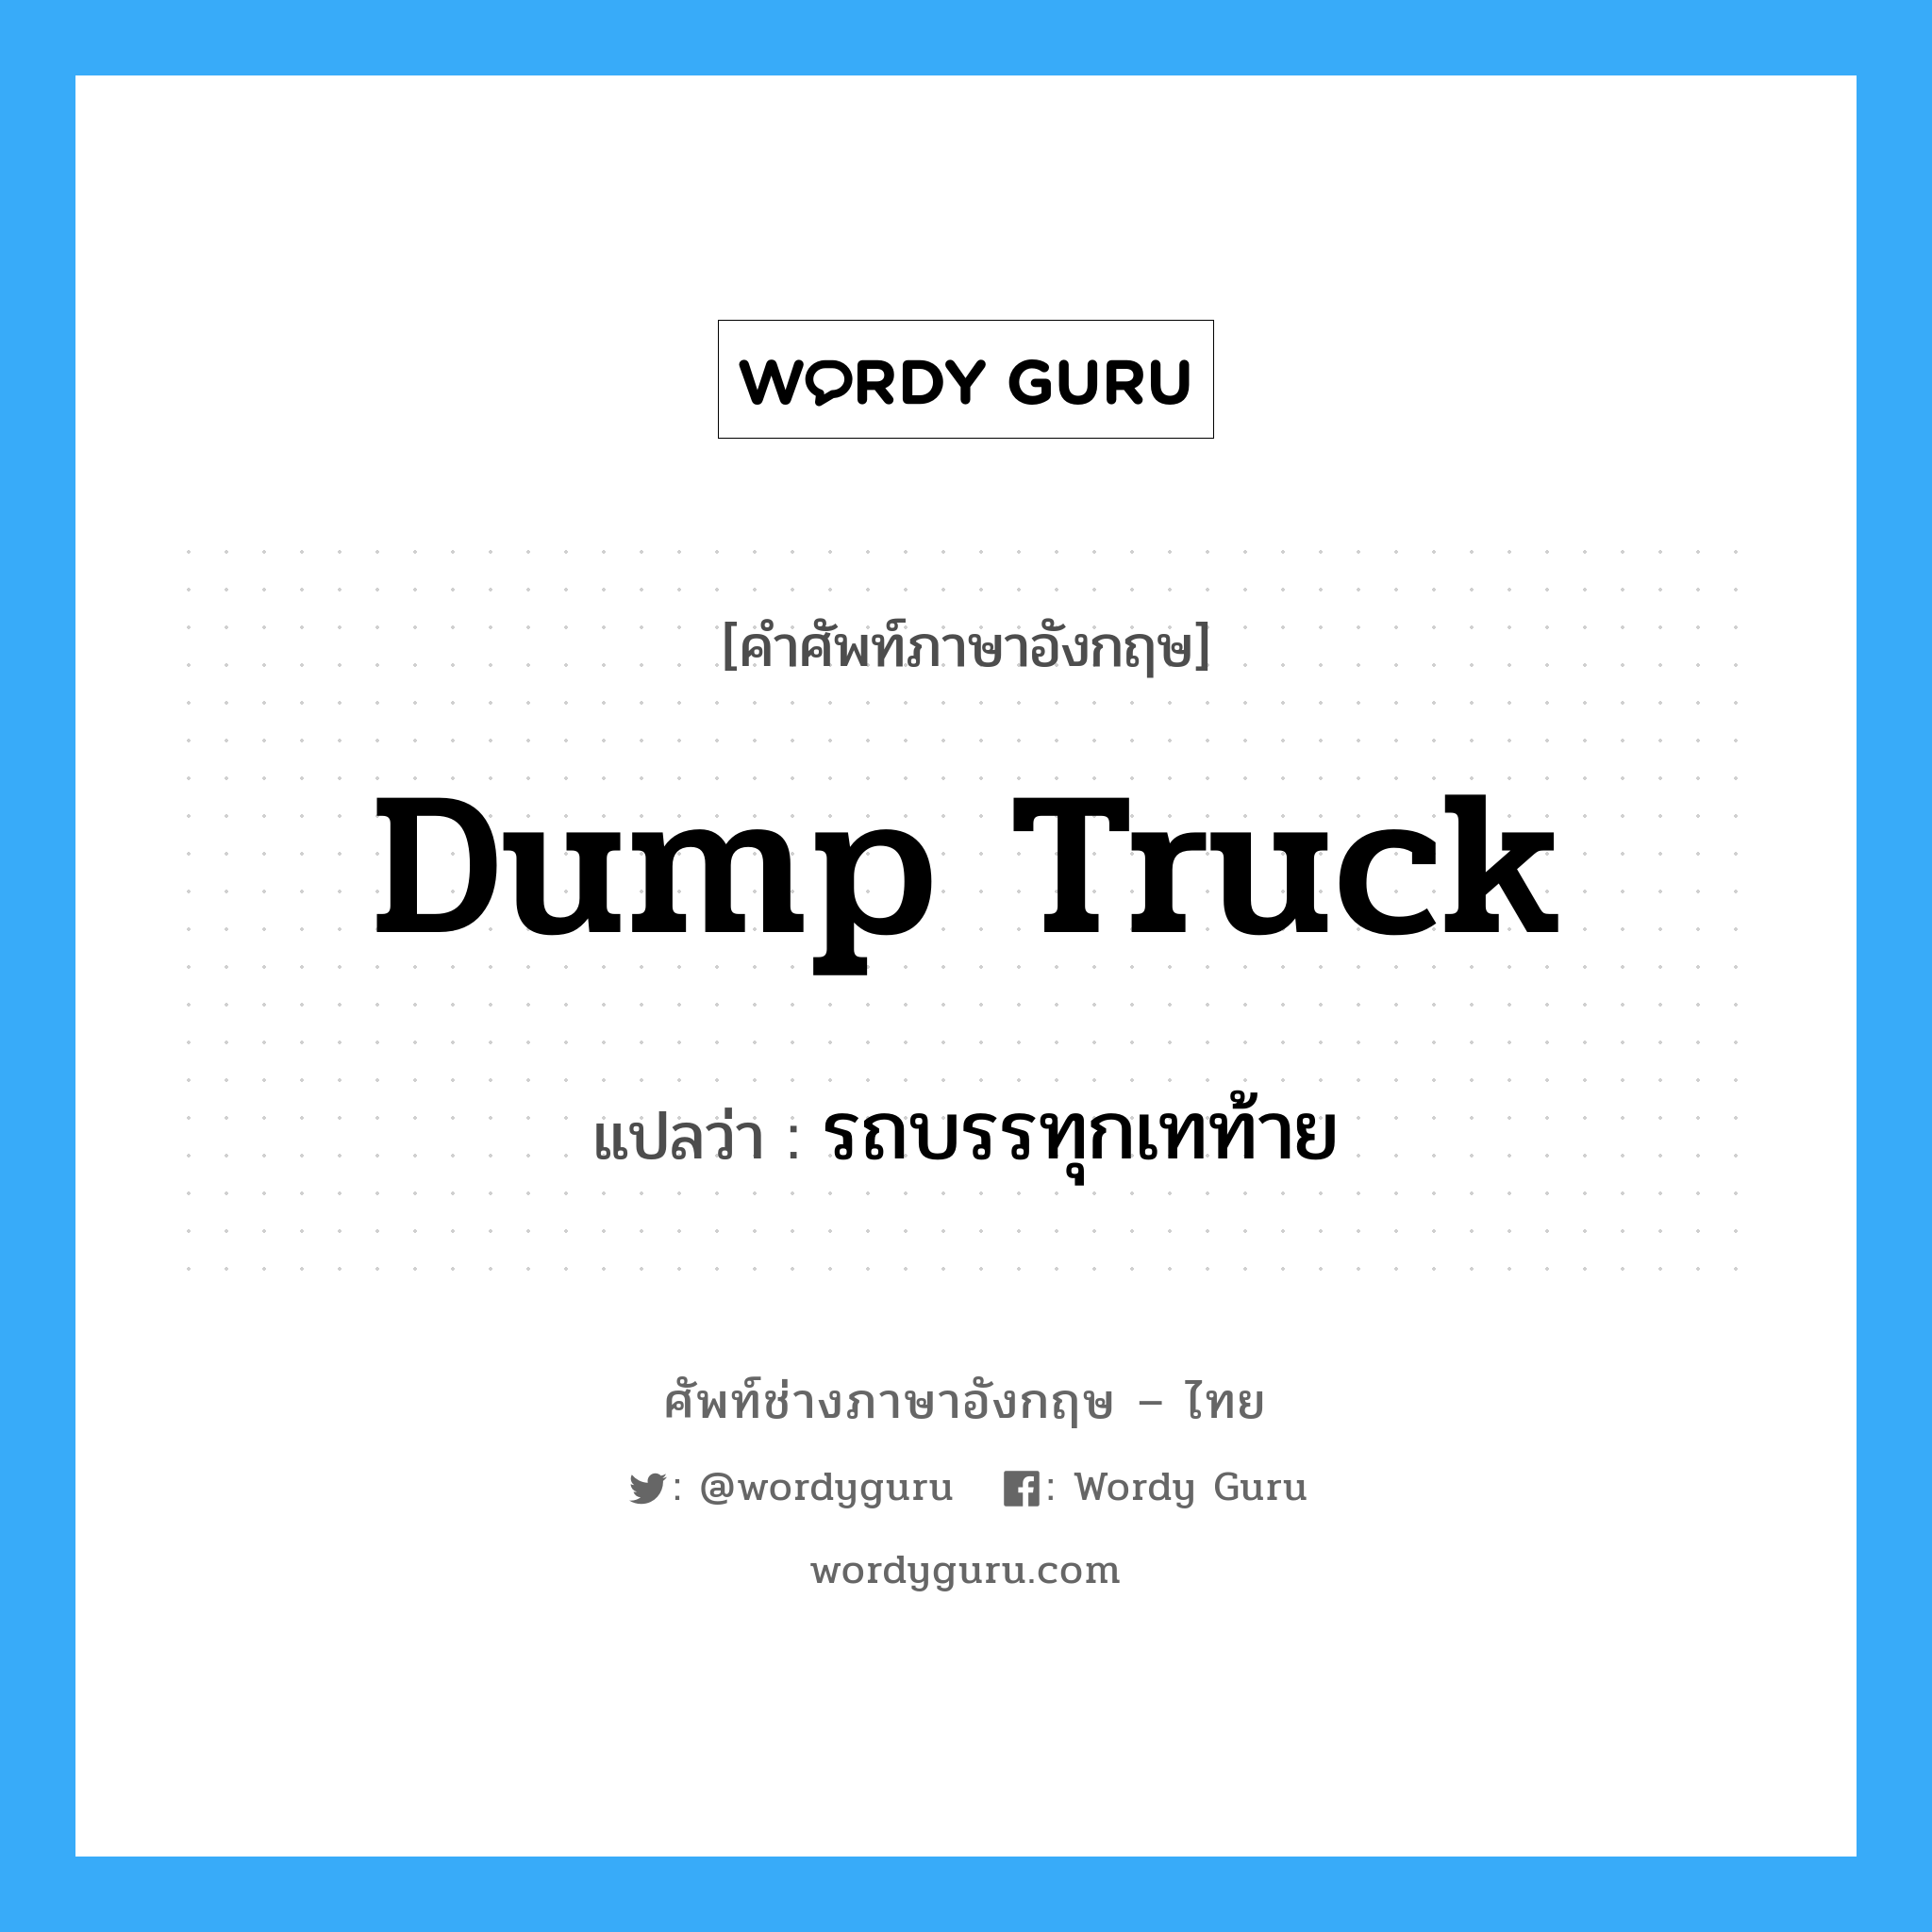 รถบรรทุกเทท้าย ภาษาอังกฤษ?, คำศัพท์ช่างภาษาอังกฤษ - ไทย รถบรรทุกเทท้าย คำศัพท์ภาษาอังกฤษ รถบรรทุกเทท้าย แปลว่า dump truck